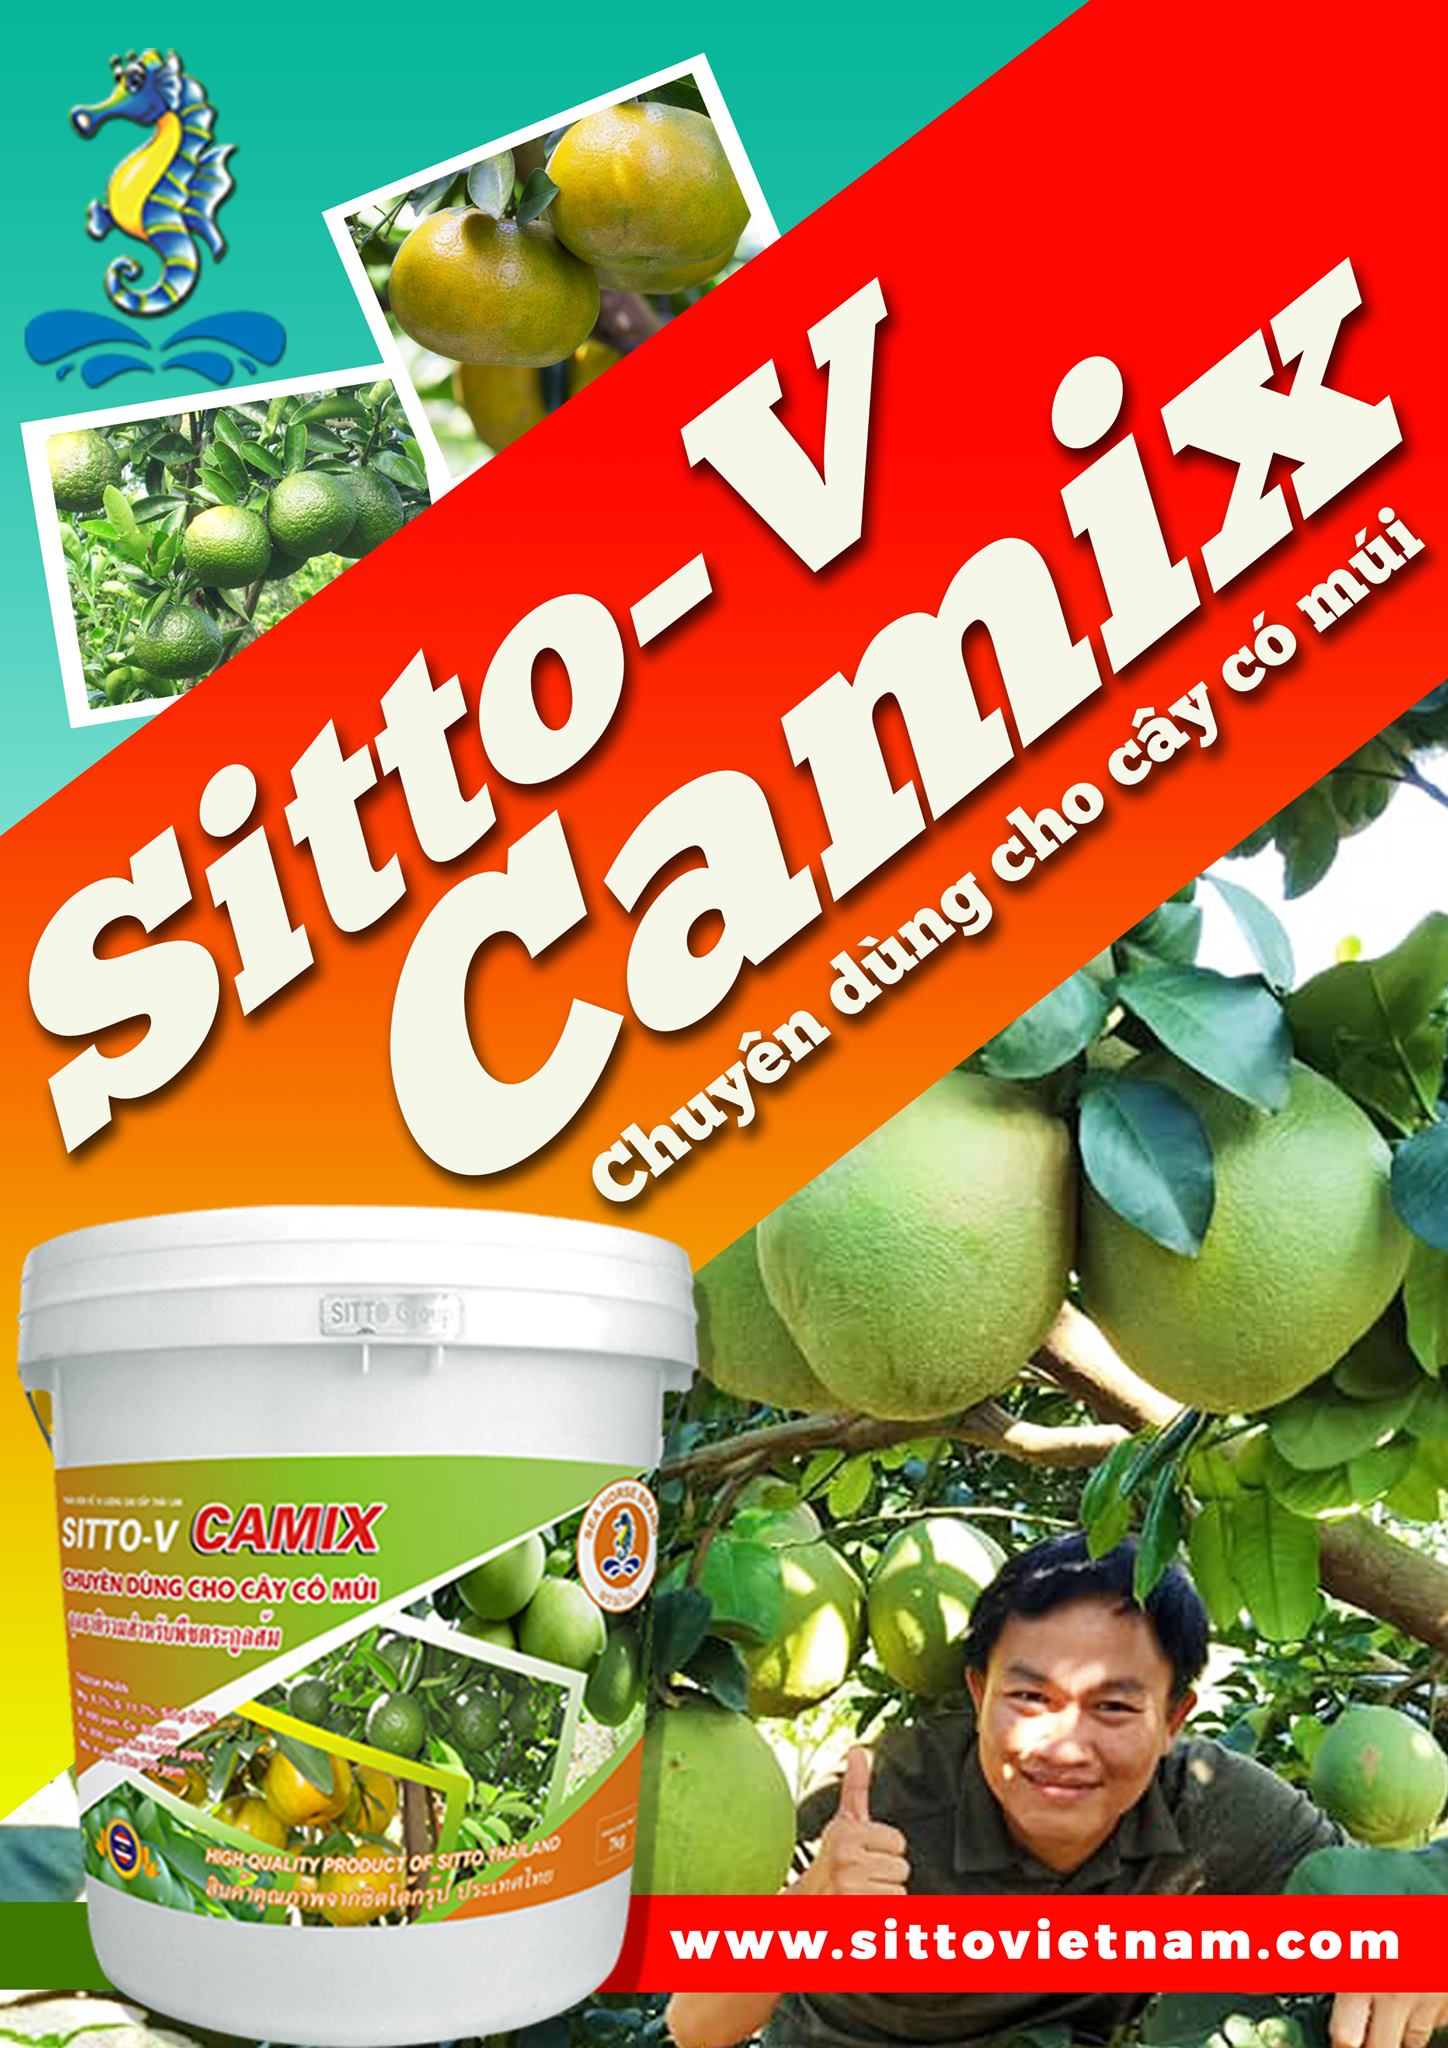 Sitto-V Camix (Cây có múi) (Xô 18kg) - Phục hồi cây sau thu hoạch